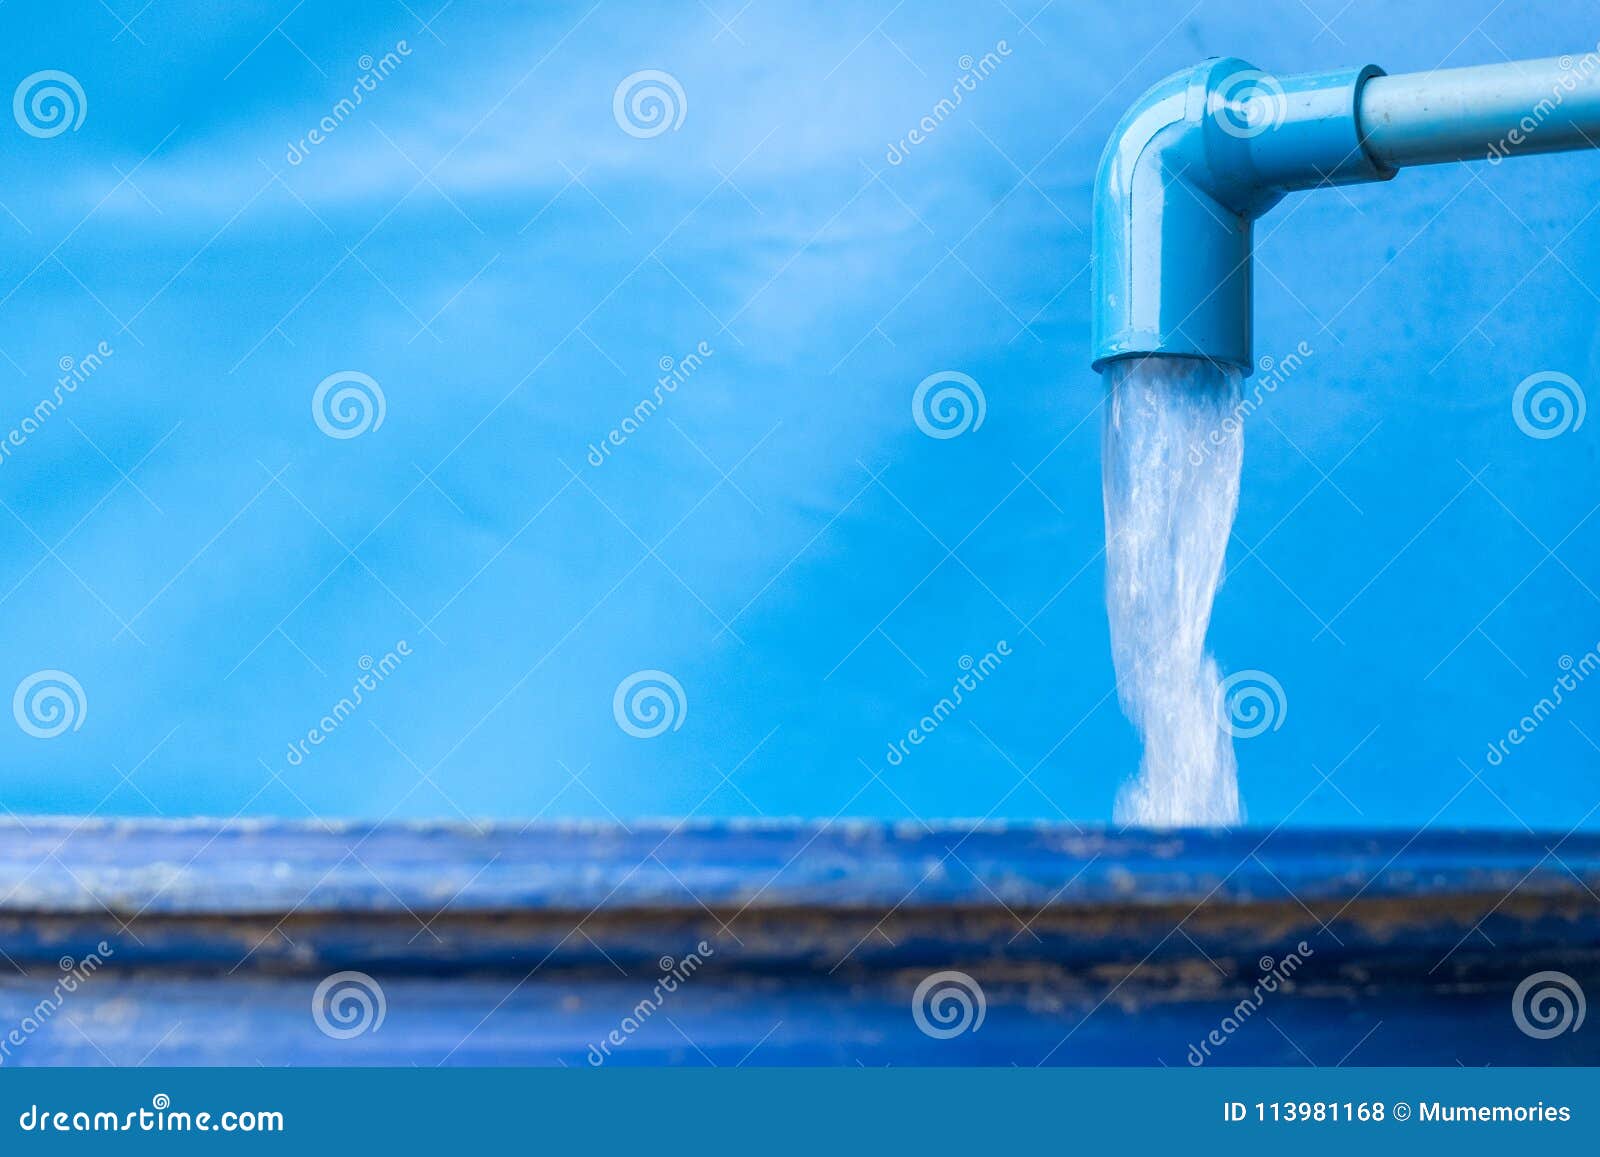 Сток жидкости. Проточная вода. Водопровод мечты. Трубы для воды. Вода течет из трубы.